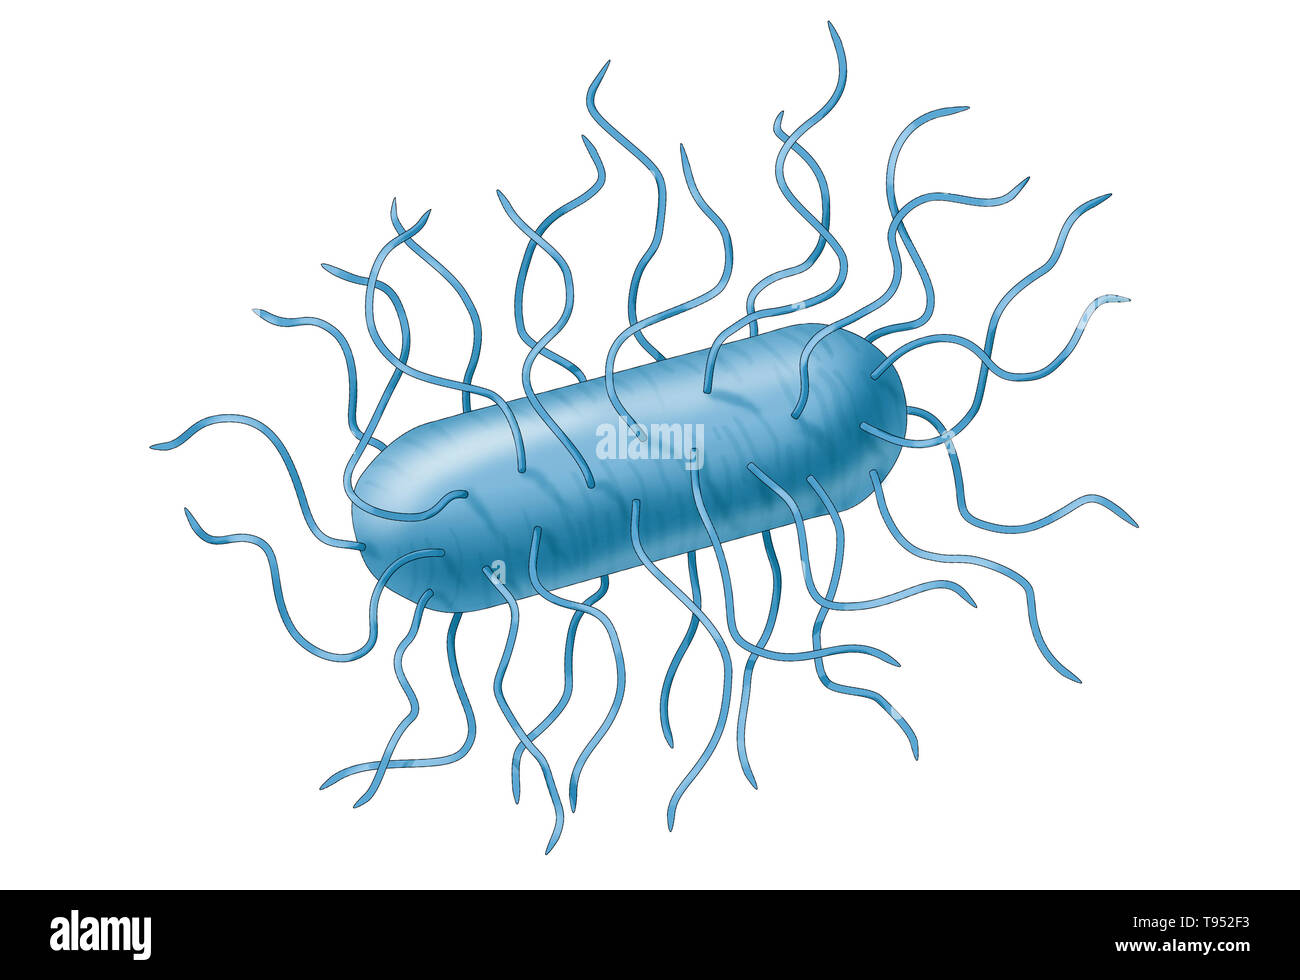 Batteri E. coli. Escherichia coli è un batterio gram-negativi, facultatively anaerobica, a forma di asta, coliformi batterio del genere Escherichia che si trova comunemente nell'intestino inferiore di caldo-blooded organismi (endoterme). La maggior parte dei ceppi di E. coli sono innocui, ma alcuni sierotipi possono causare gravi intossicazioni alimentari nei loro eserciti e a volte sono responsabili per i richiami del prodotto a causa di contaminazione alimentare. Foto Stock